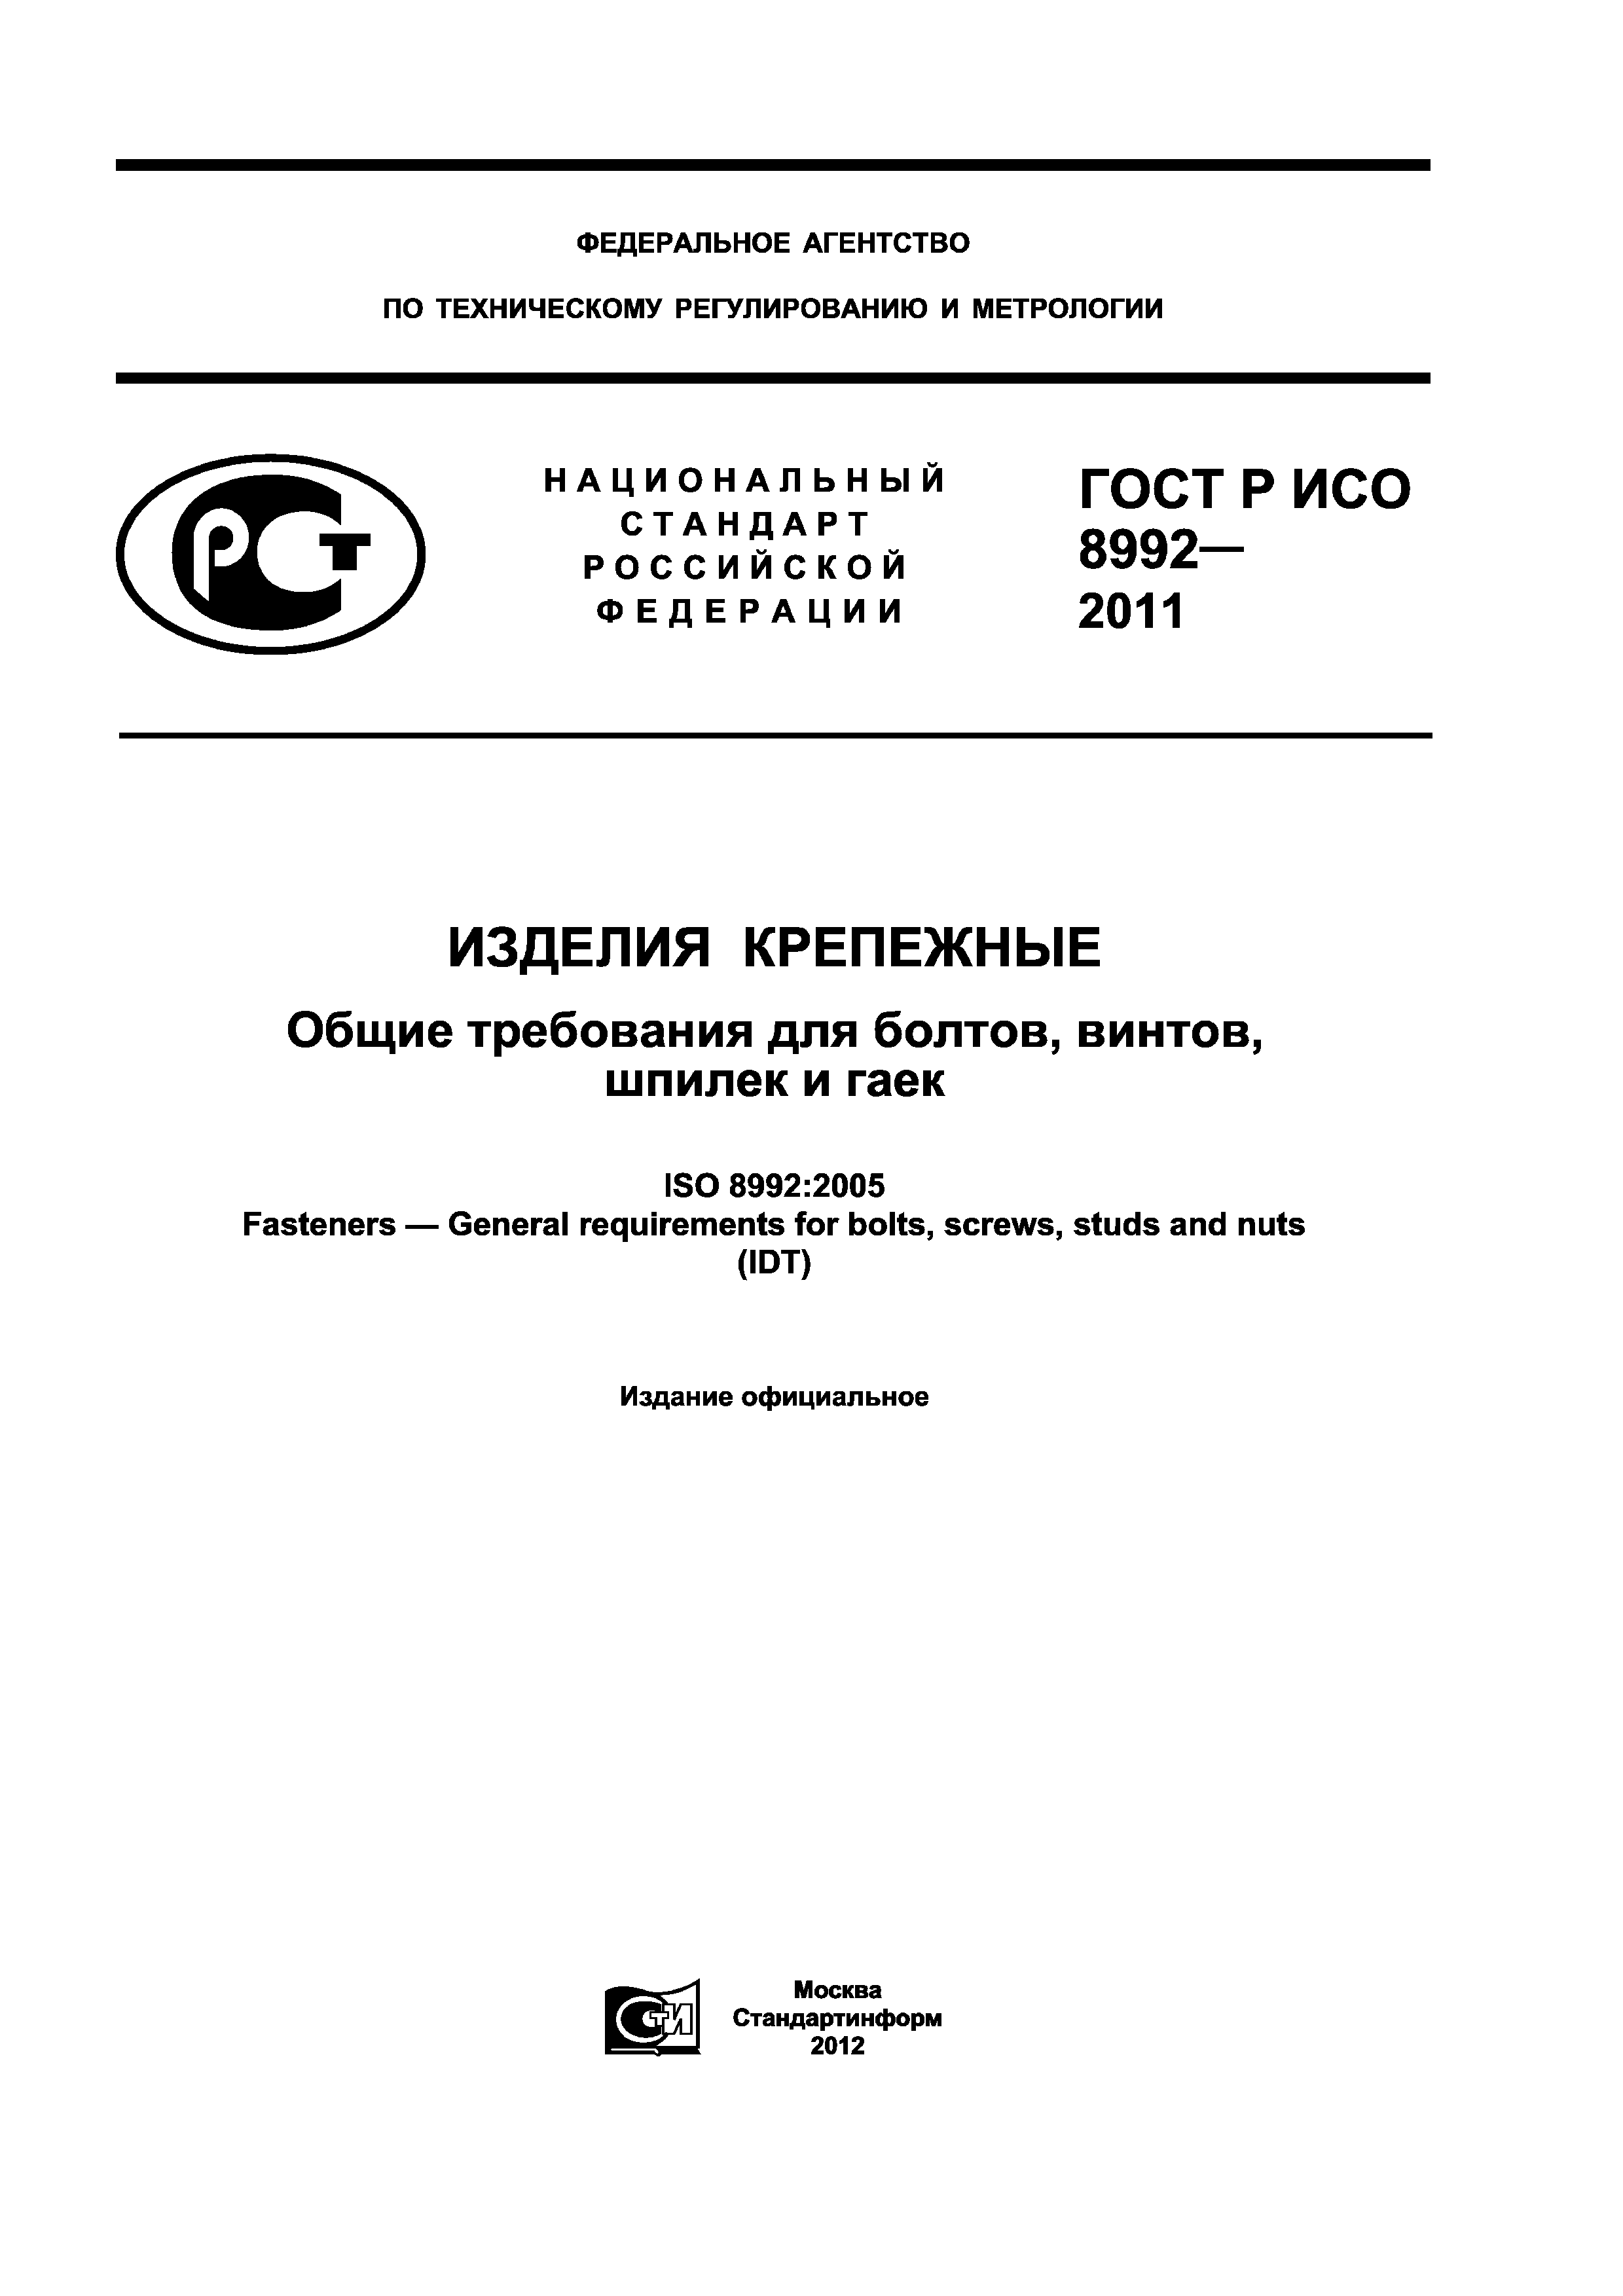 ГОСТ Р ИСО 8992-2011